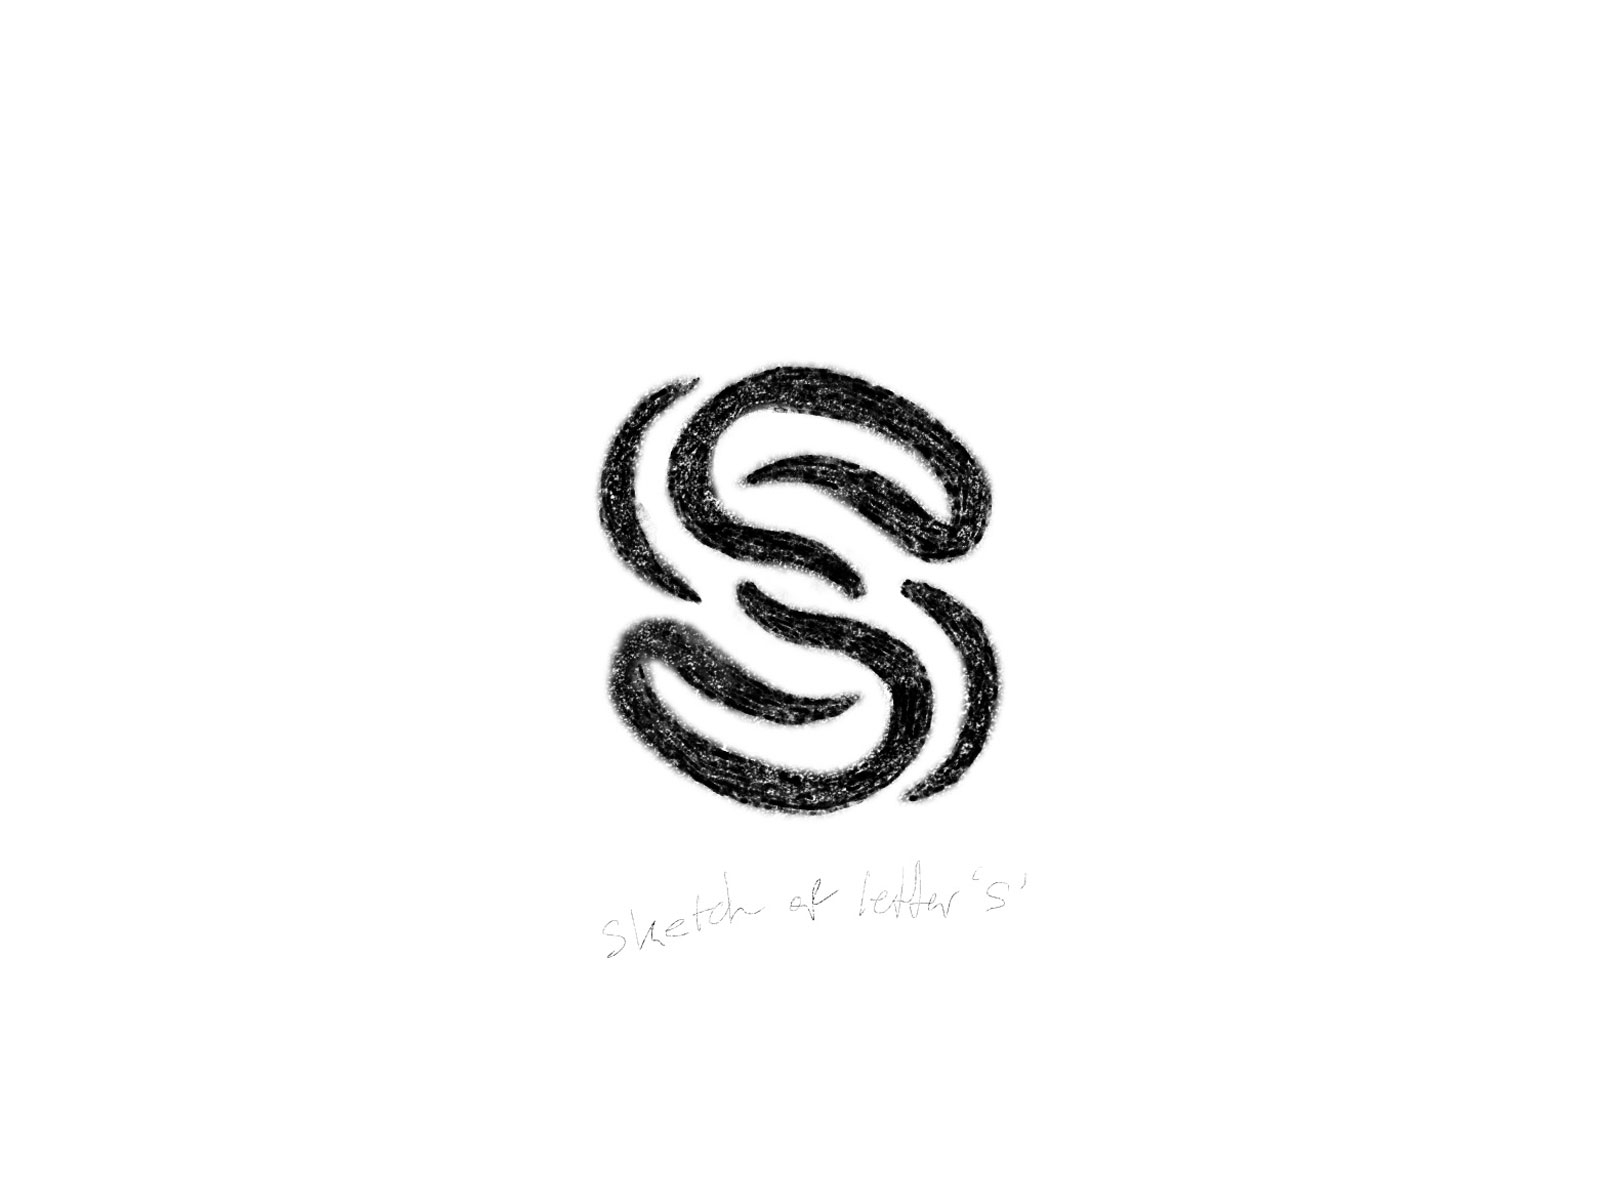 Vector Handwritten Letter S Monogram Or Logo Brand Stock Illustration   Download Image Now  Letter S Logo Flower  iStock